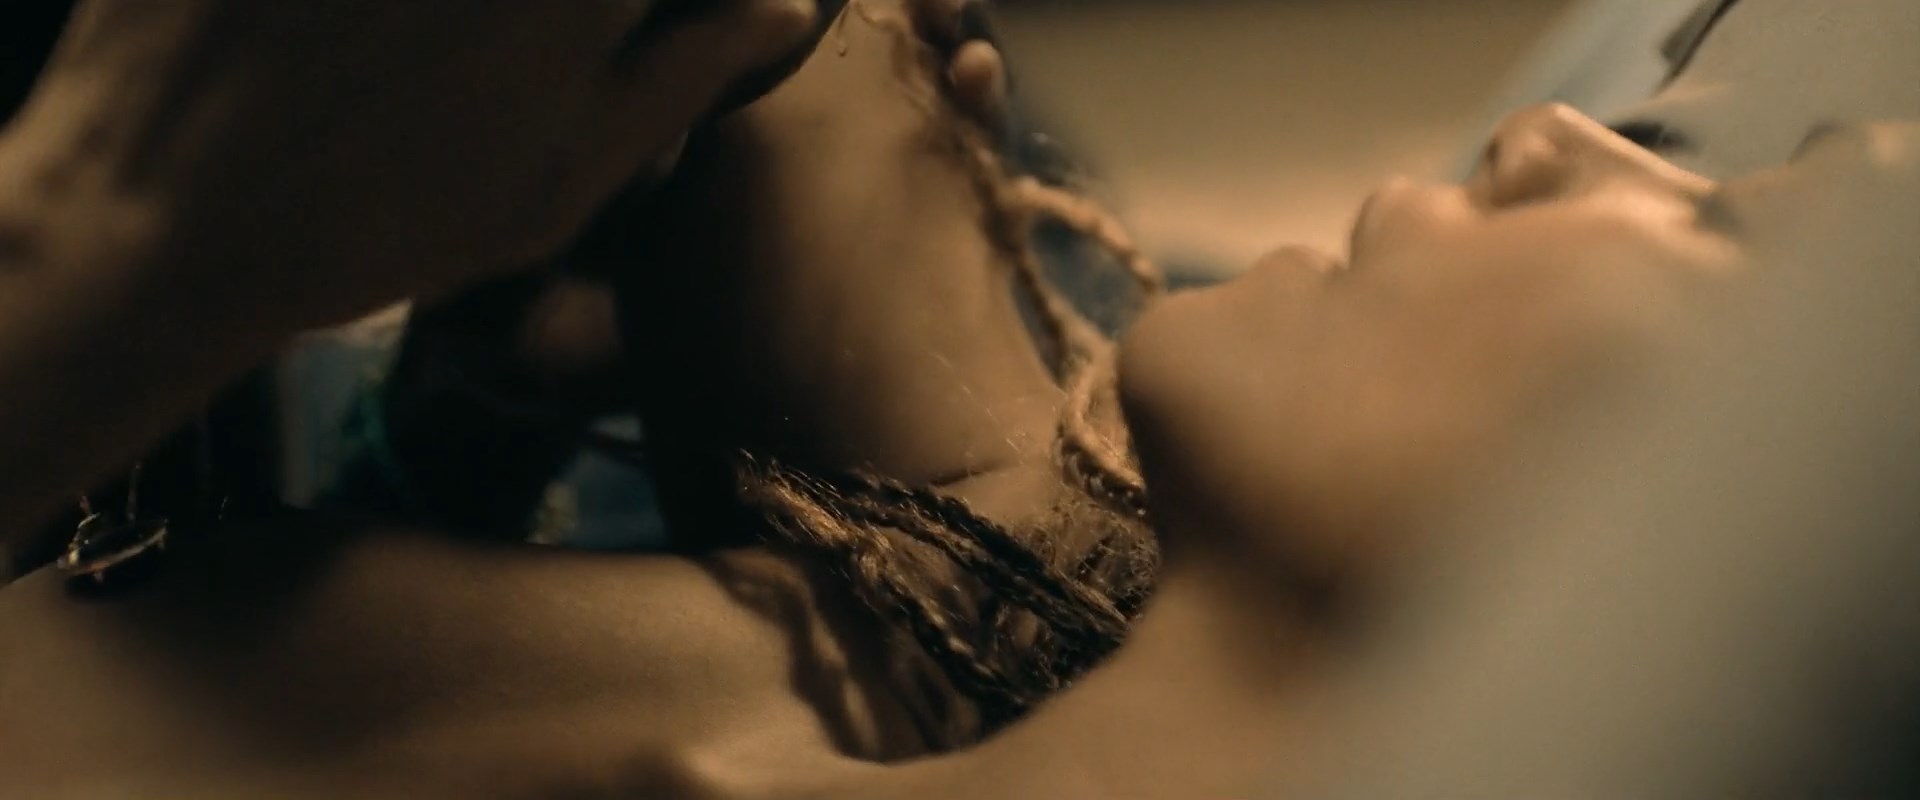 Halle Berry Nude Â» Celebs Nude Video - NudeCelebVideo.Net